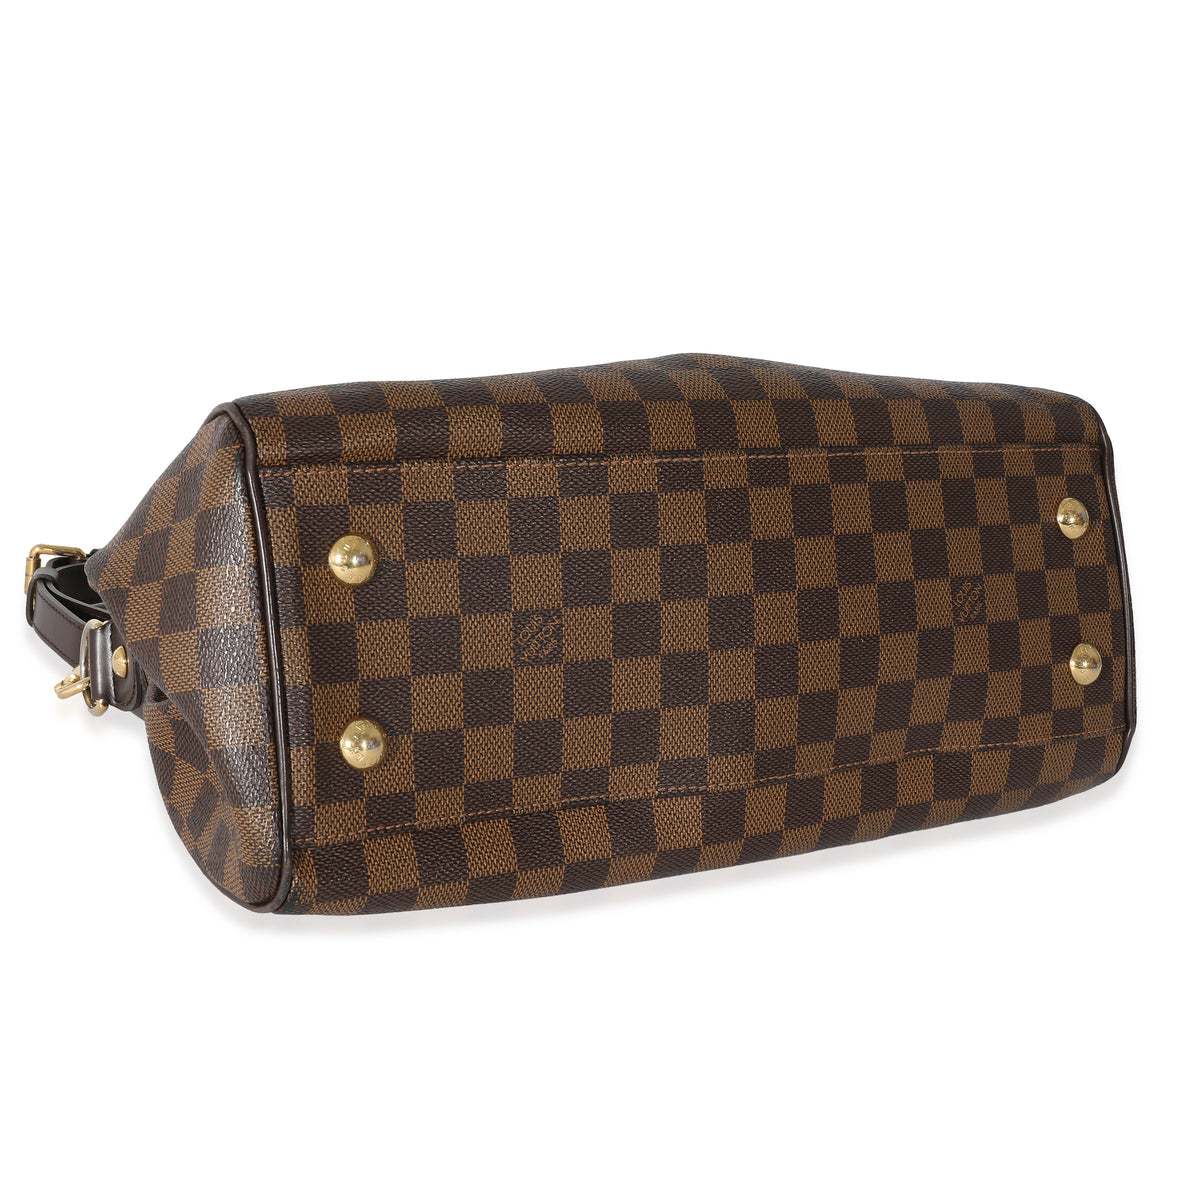 Louis Vuitton Trevi PM Handbag Review/ Should You Get This Bag